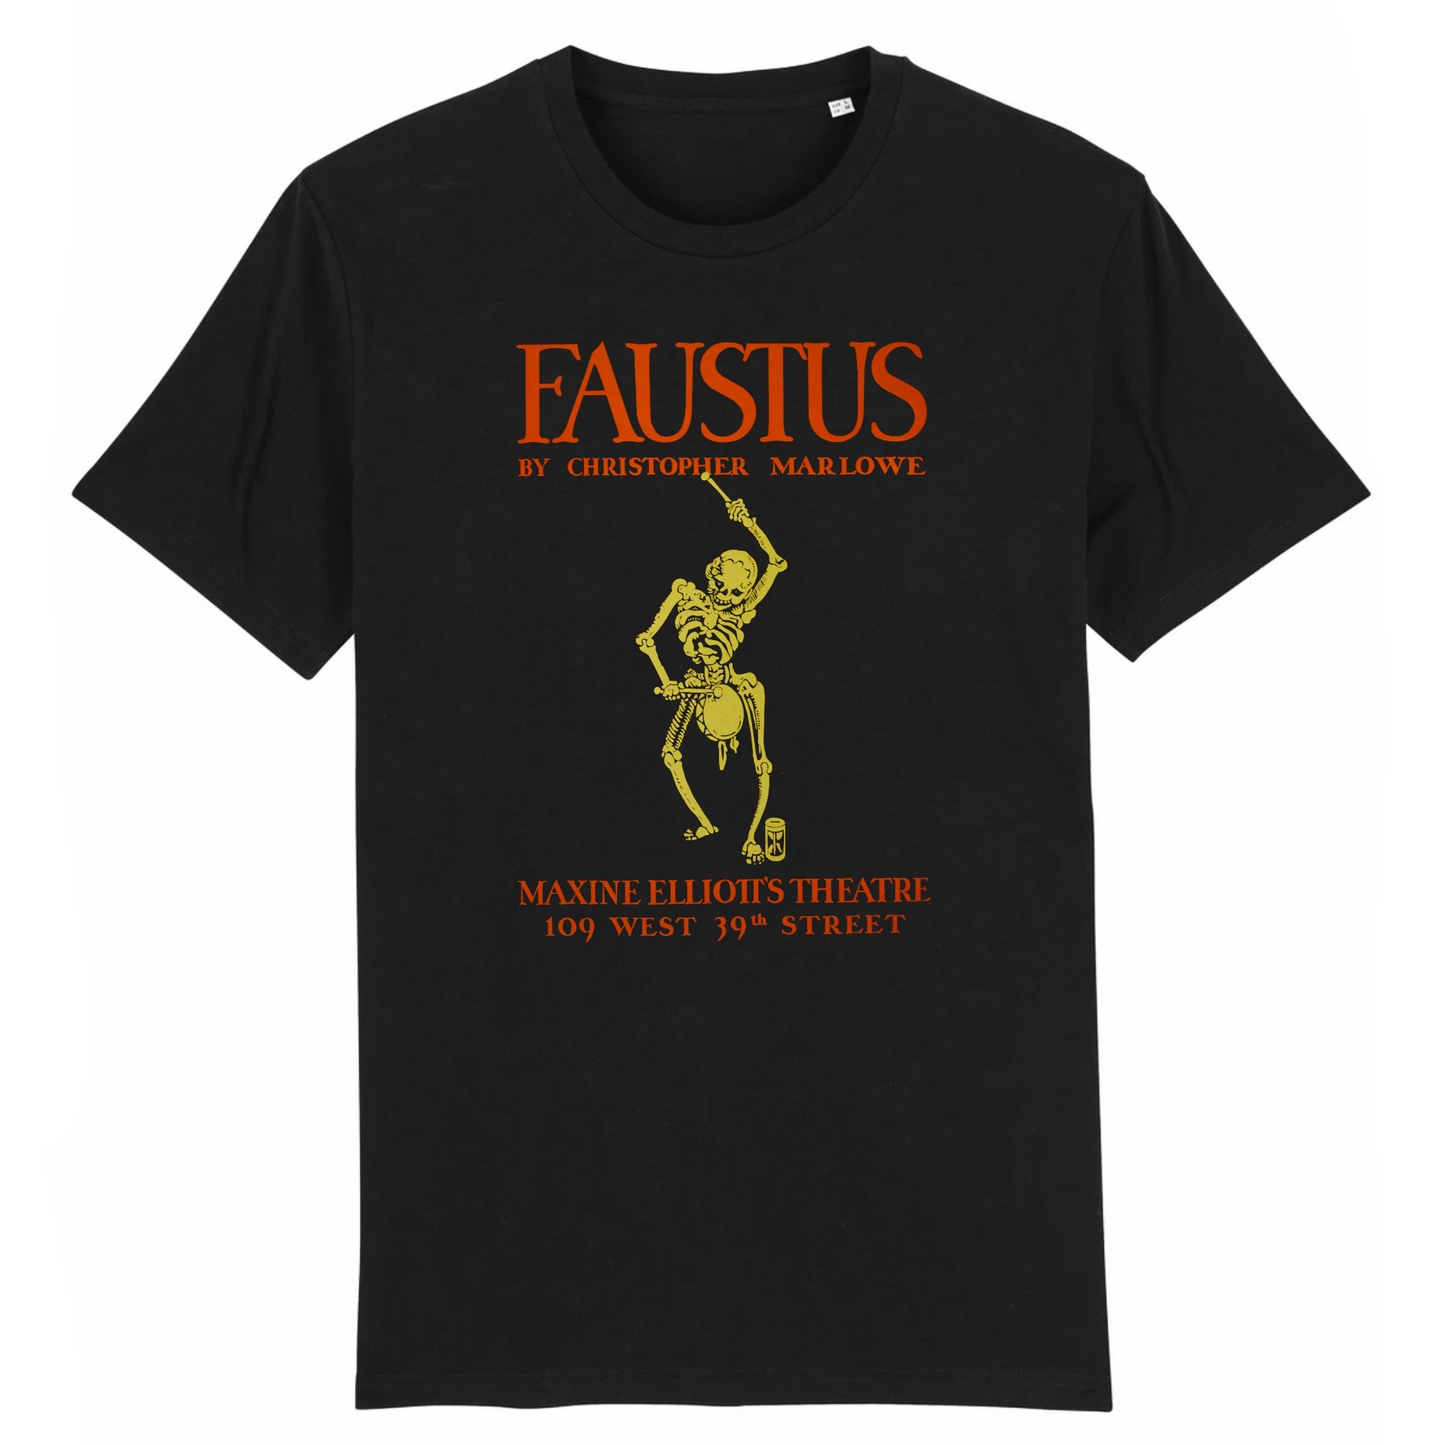 Présentation du projet de théâtre fédéral de Faustus au théâtre de Maxine Elliott vers 1940 - T-shirt en coton biologique